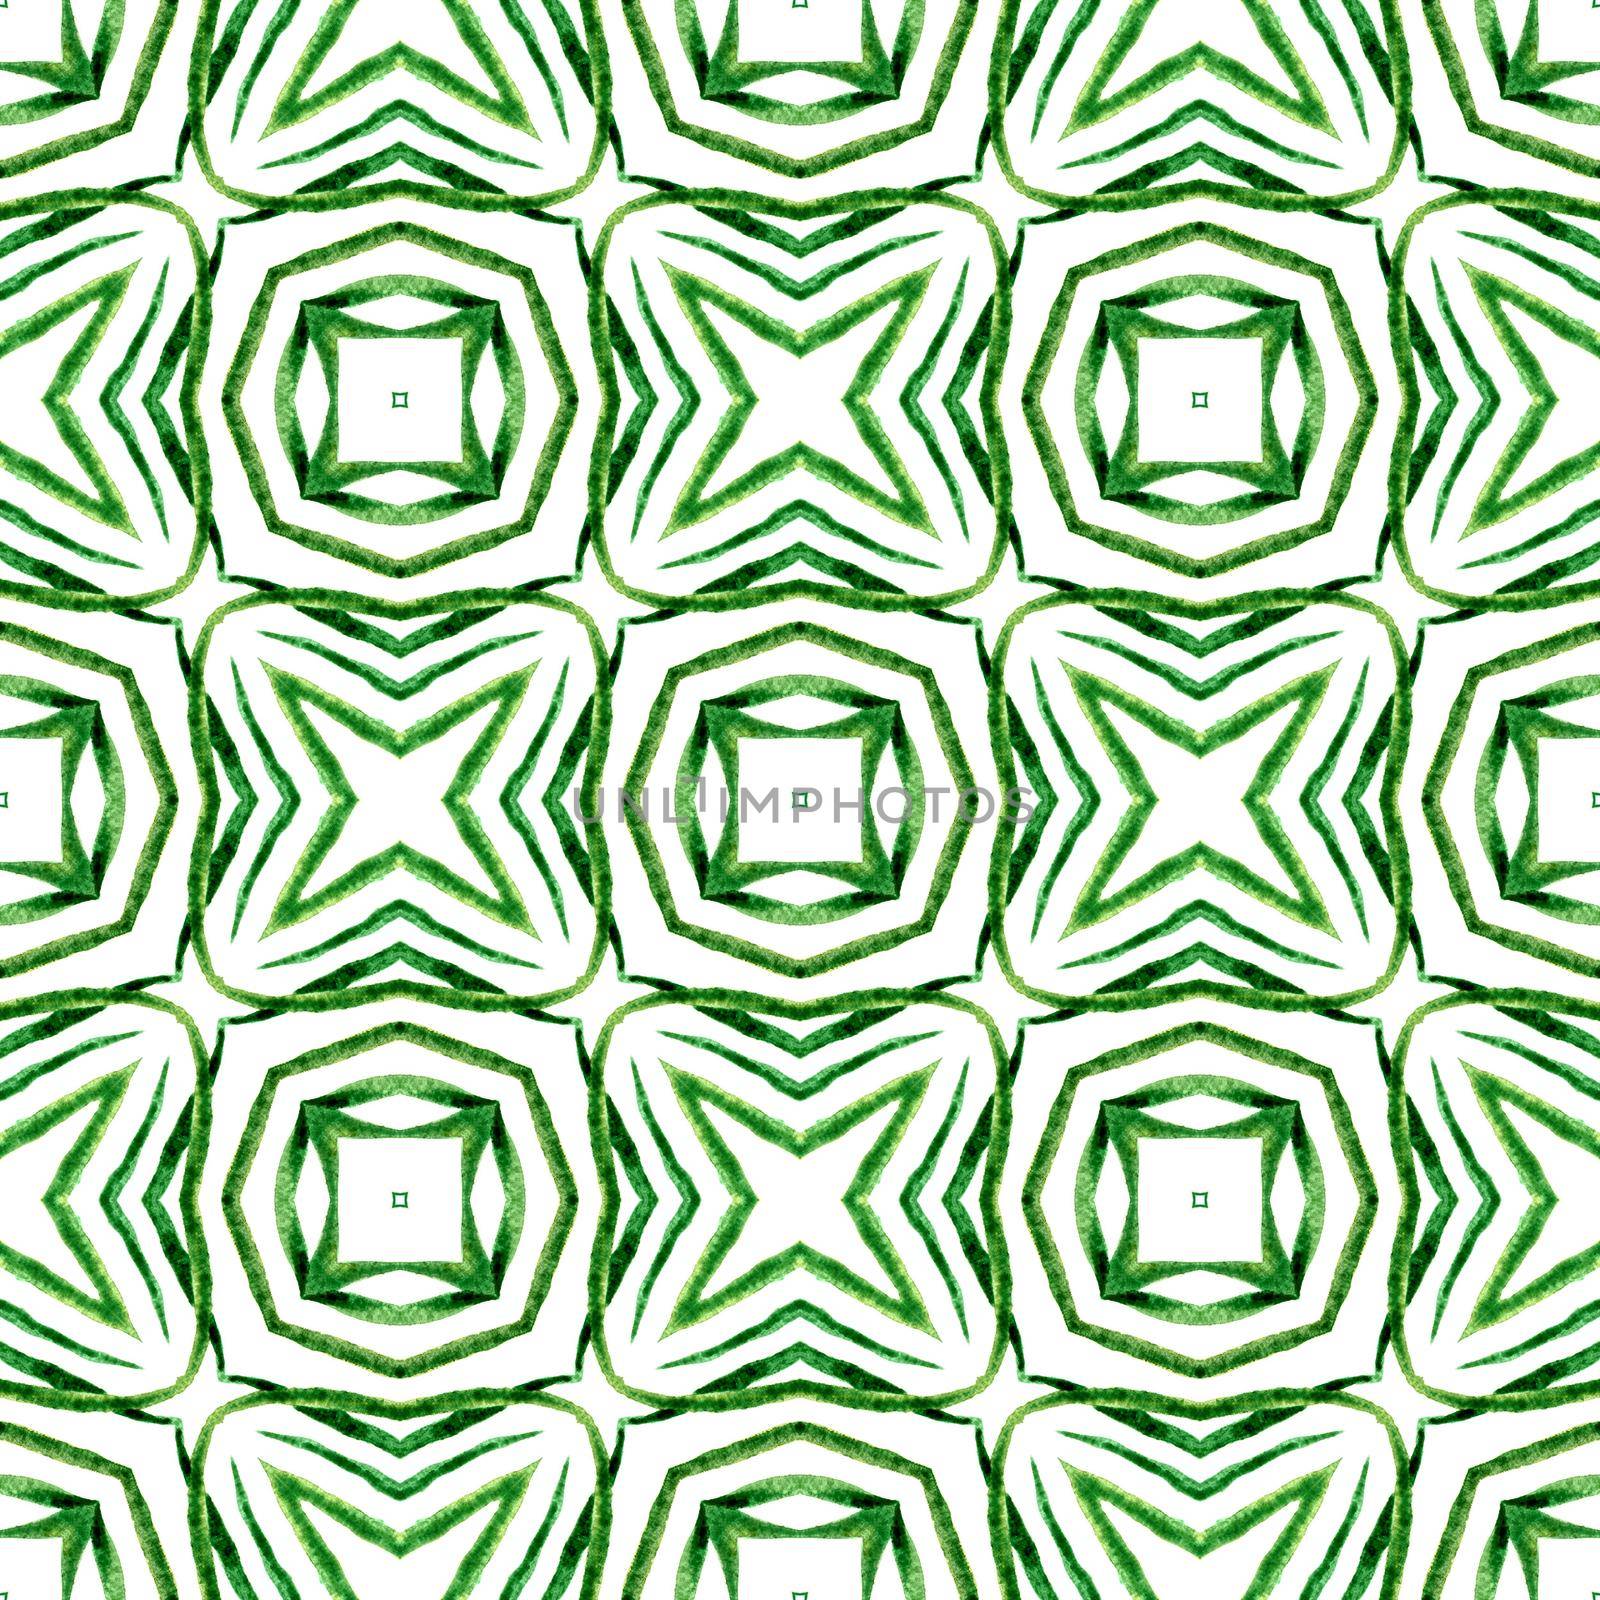 Hand drawn green mosaic seamless border. Green by beginagain